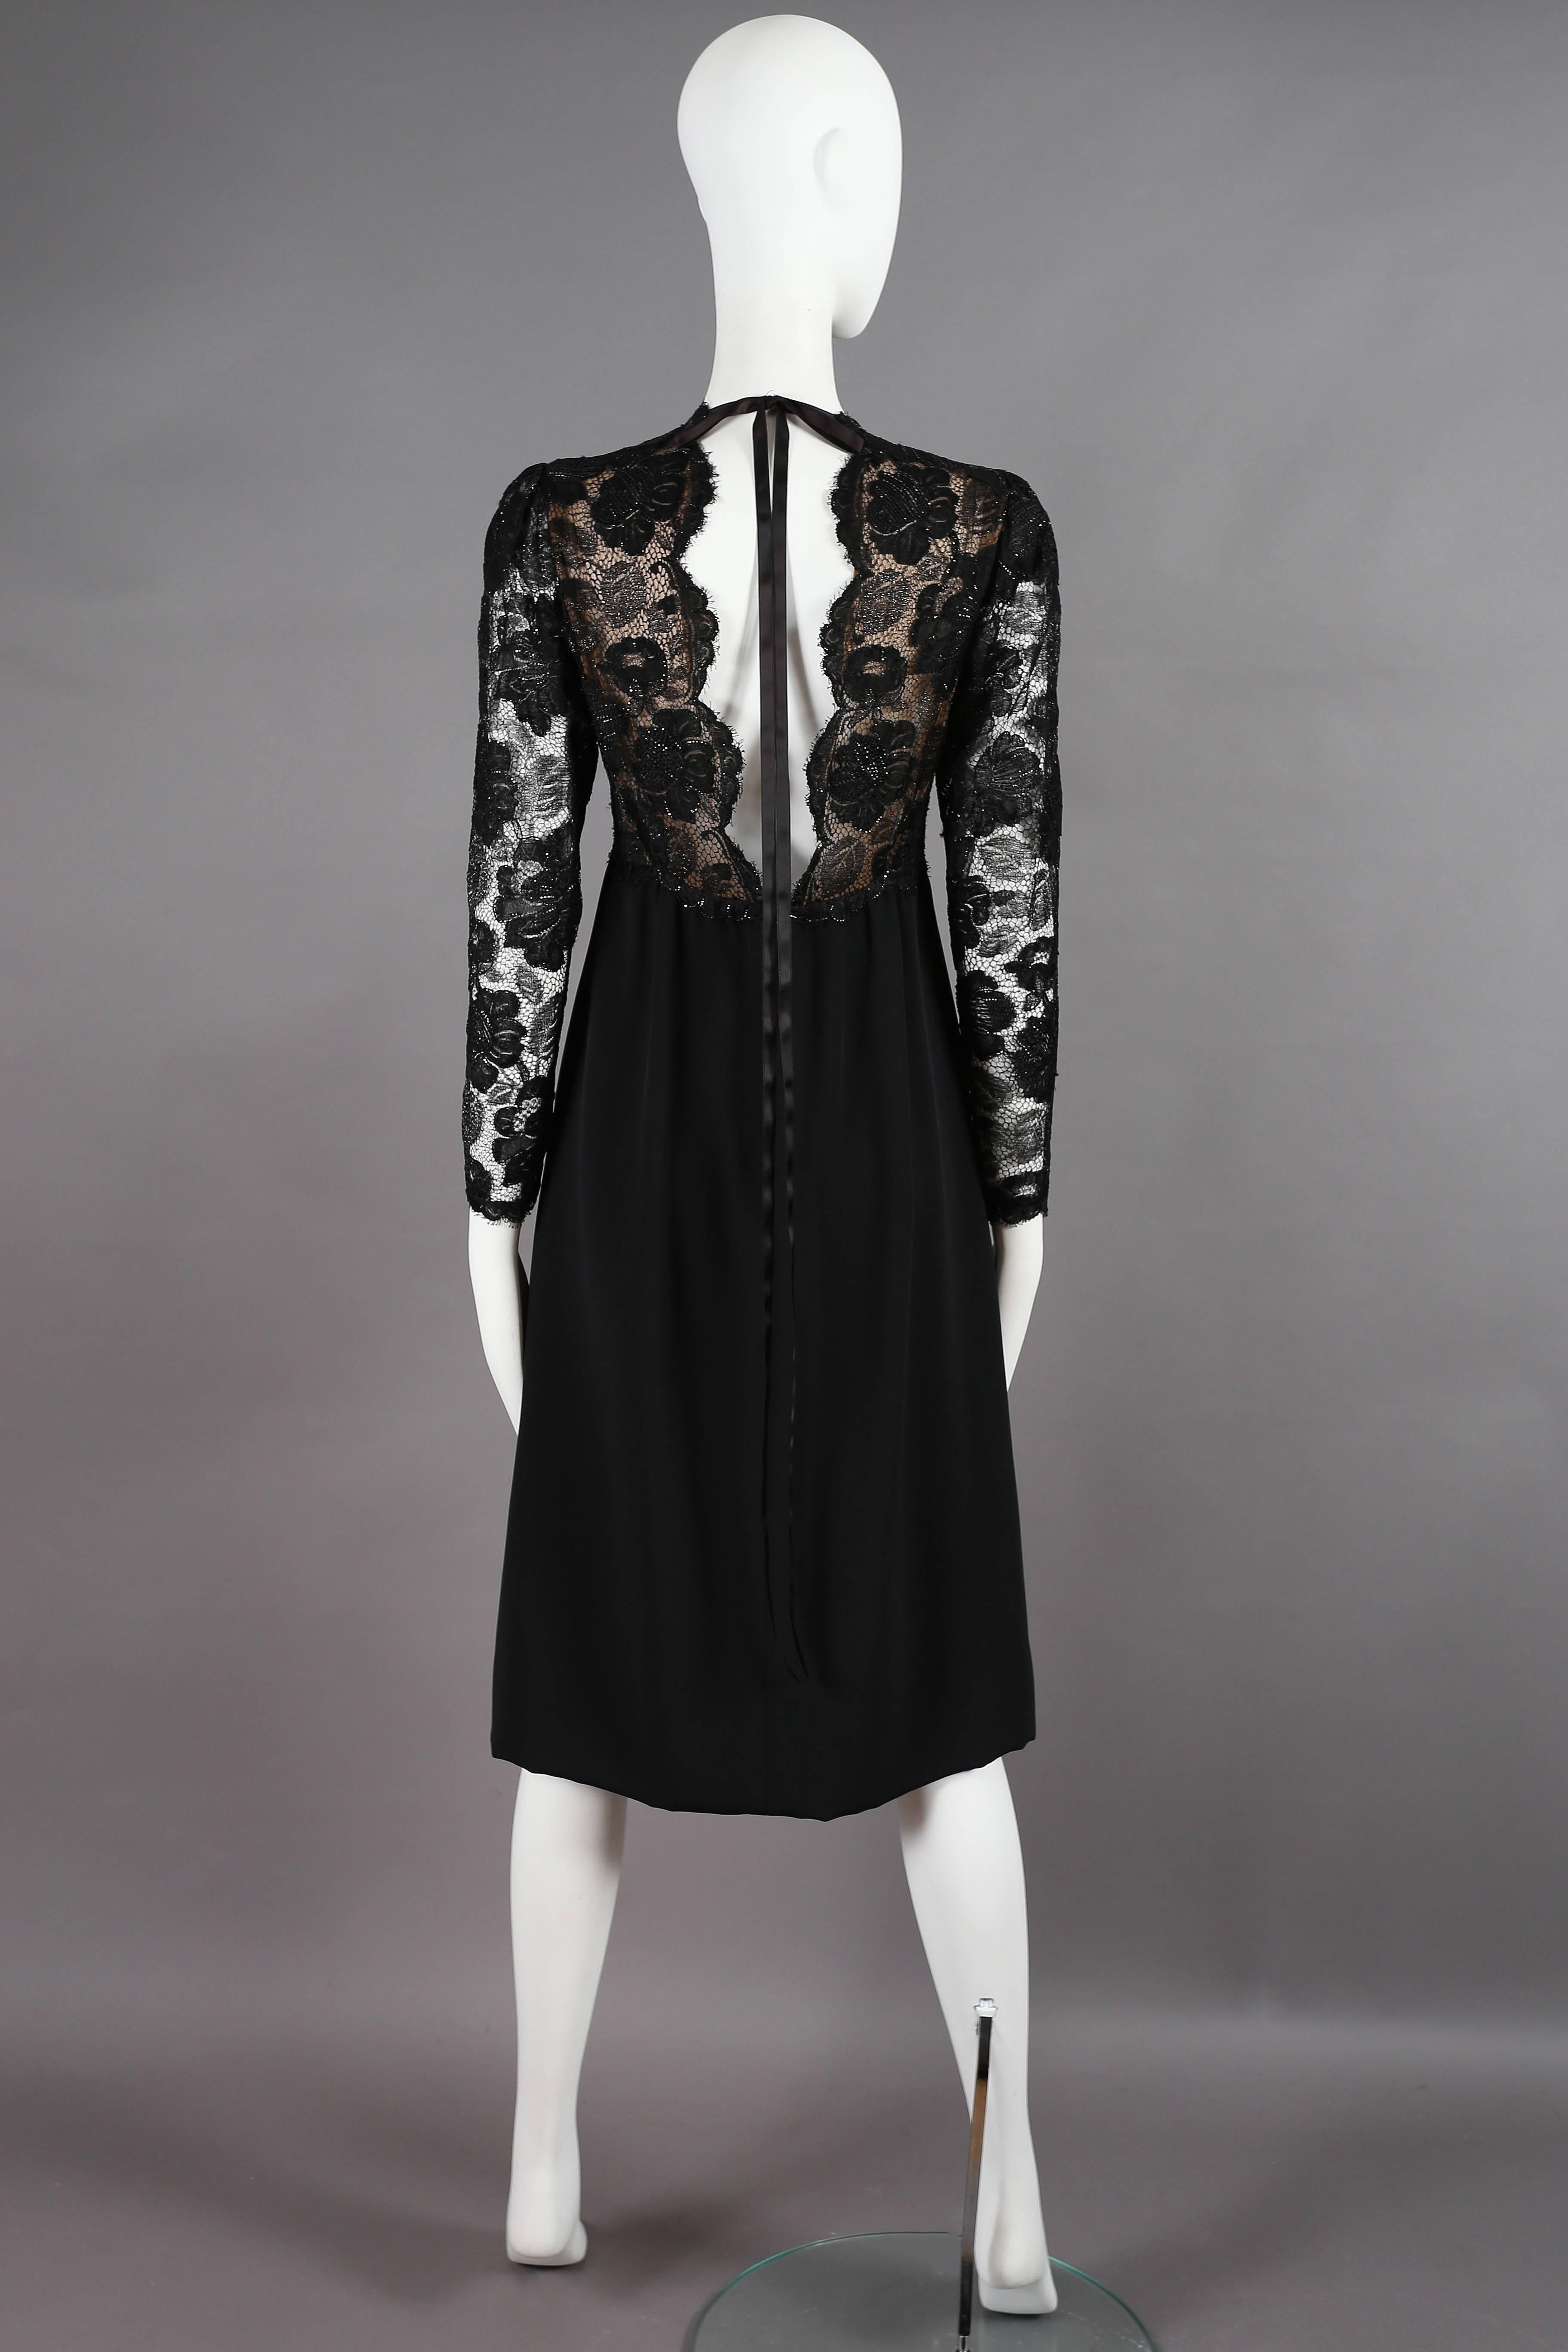 Women's Yves Saint Laurent Haute Couture black lace cocktail dress, circa 1979